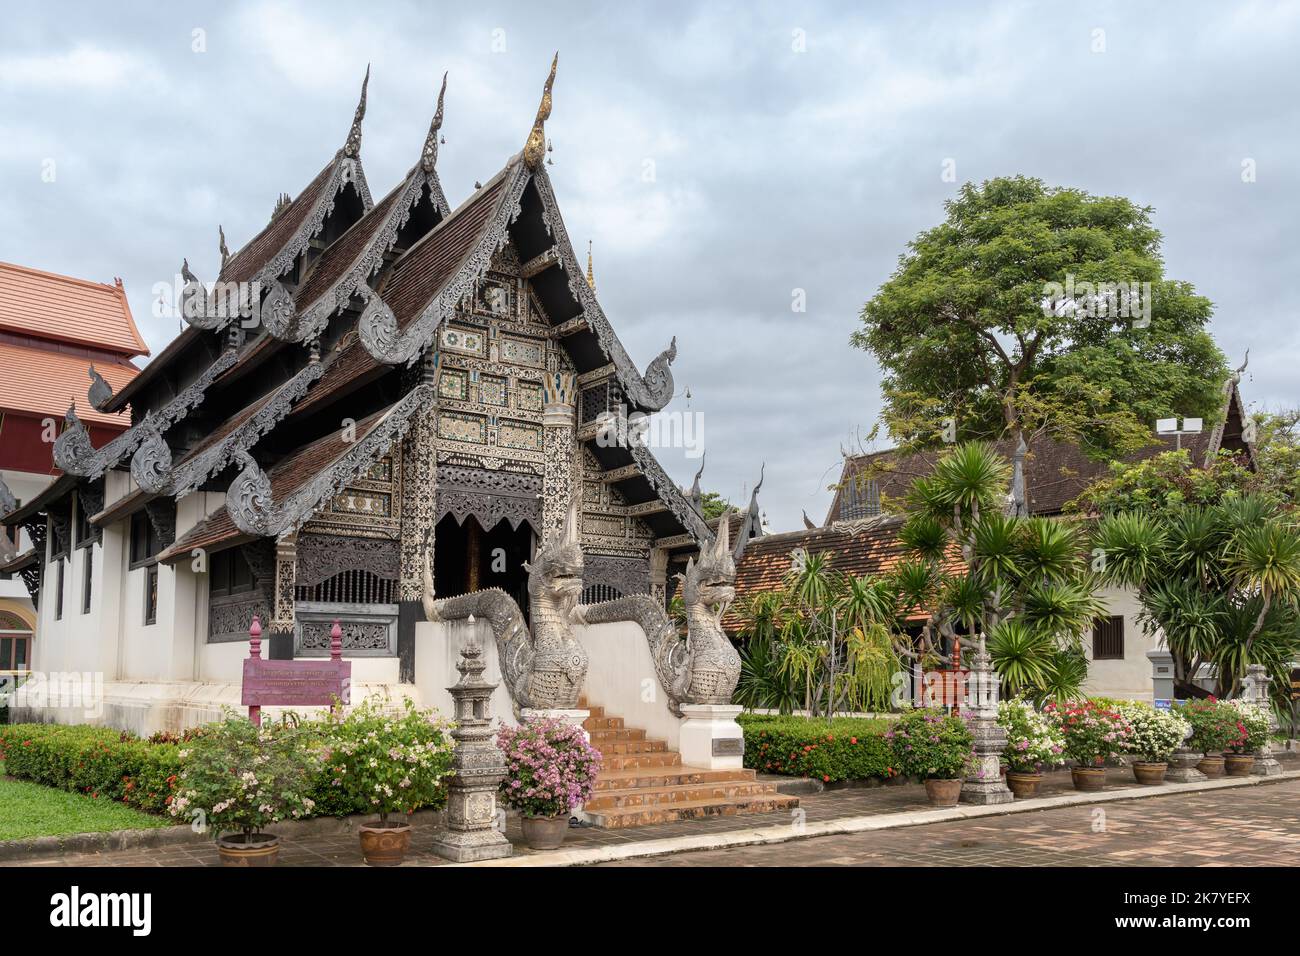 Vista panoramica dei tradizionali edifici del tempio buddista in stile Lanna presso il famoso storico Wat Chedi Luang, Chiang mai, Thailandia Foto Stock